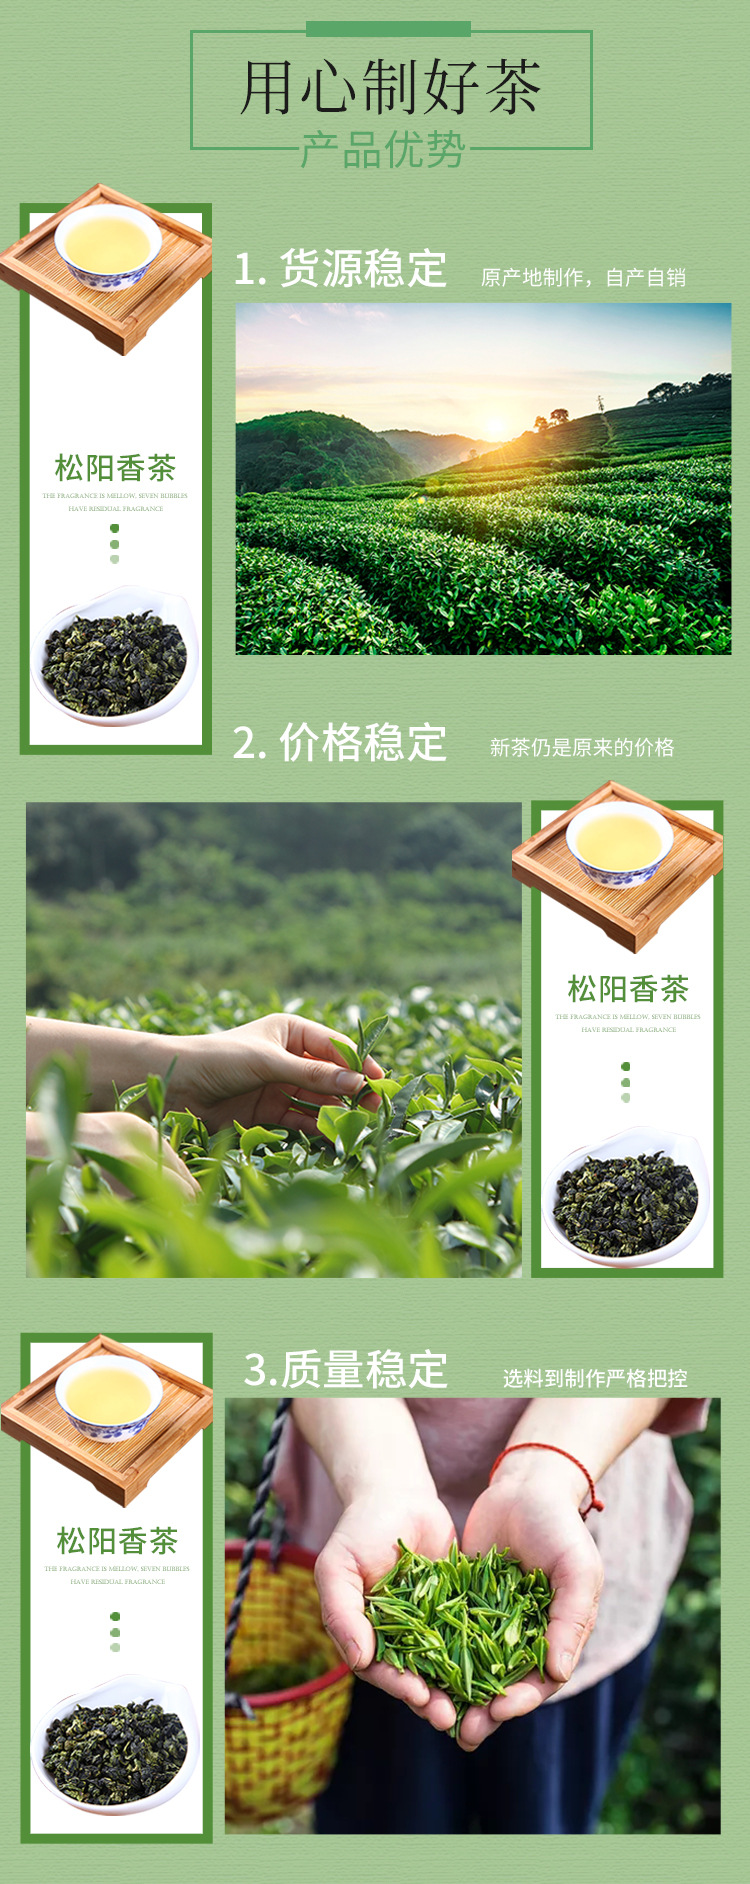 绿茶--修改_05